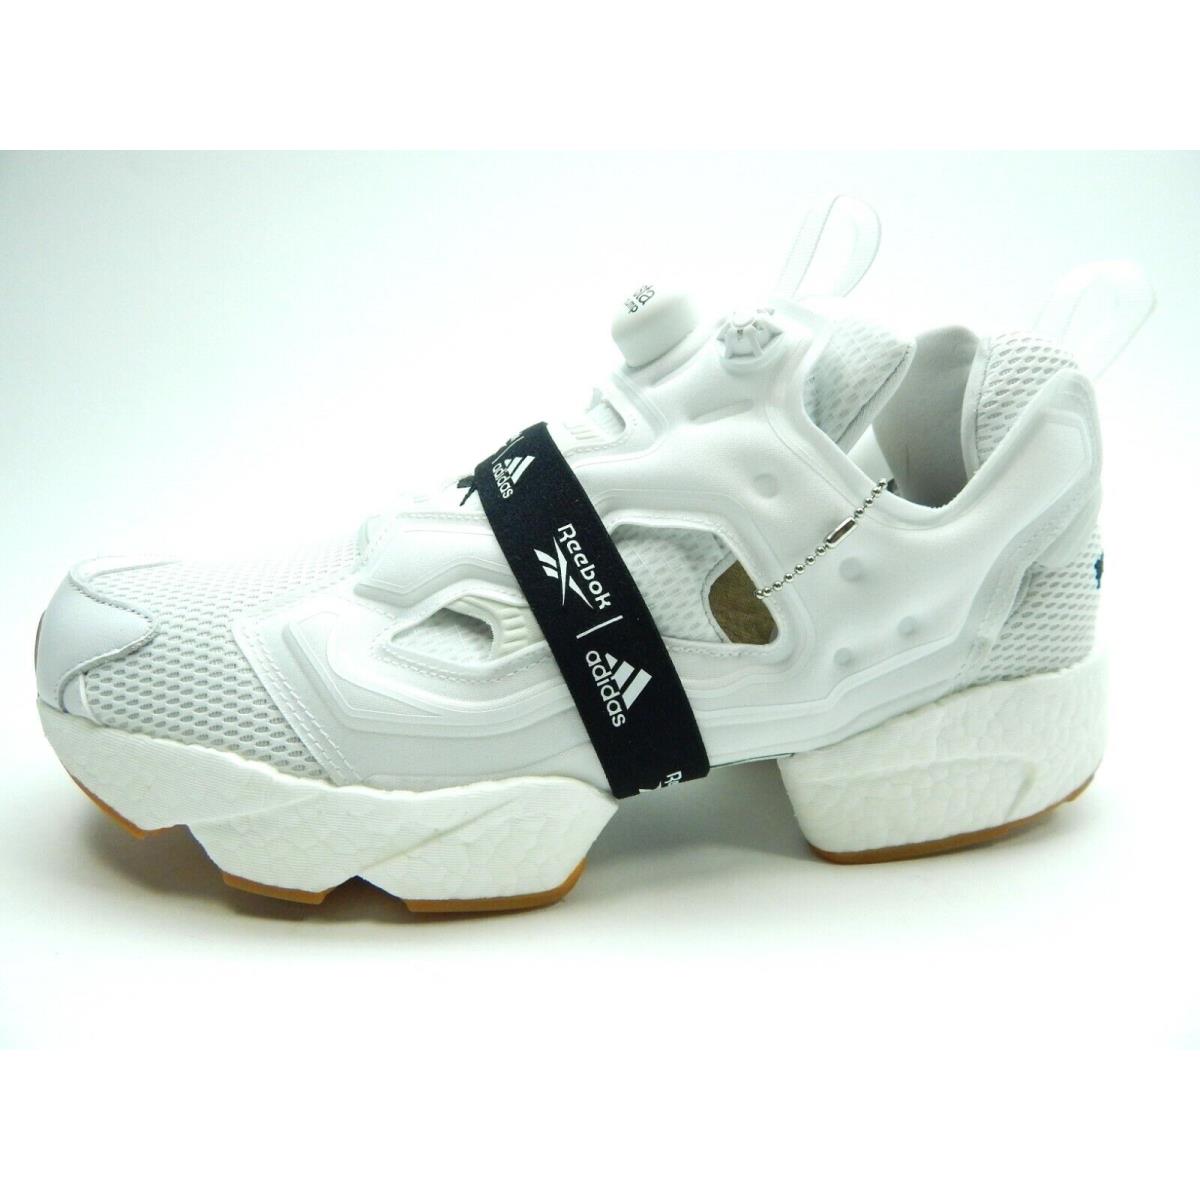 Reebok Instapump Fury Boost FU9238 Men Shoes Size 11